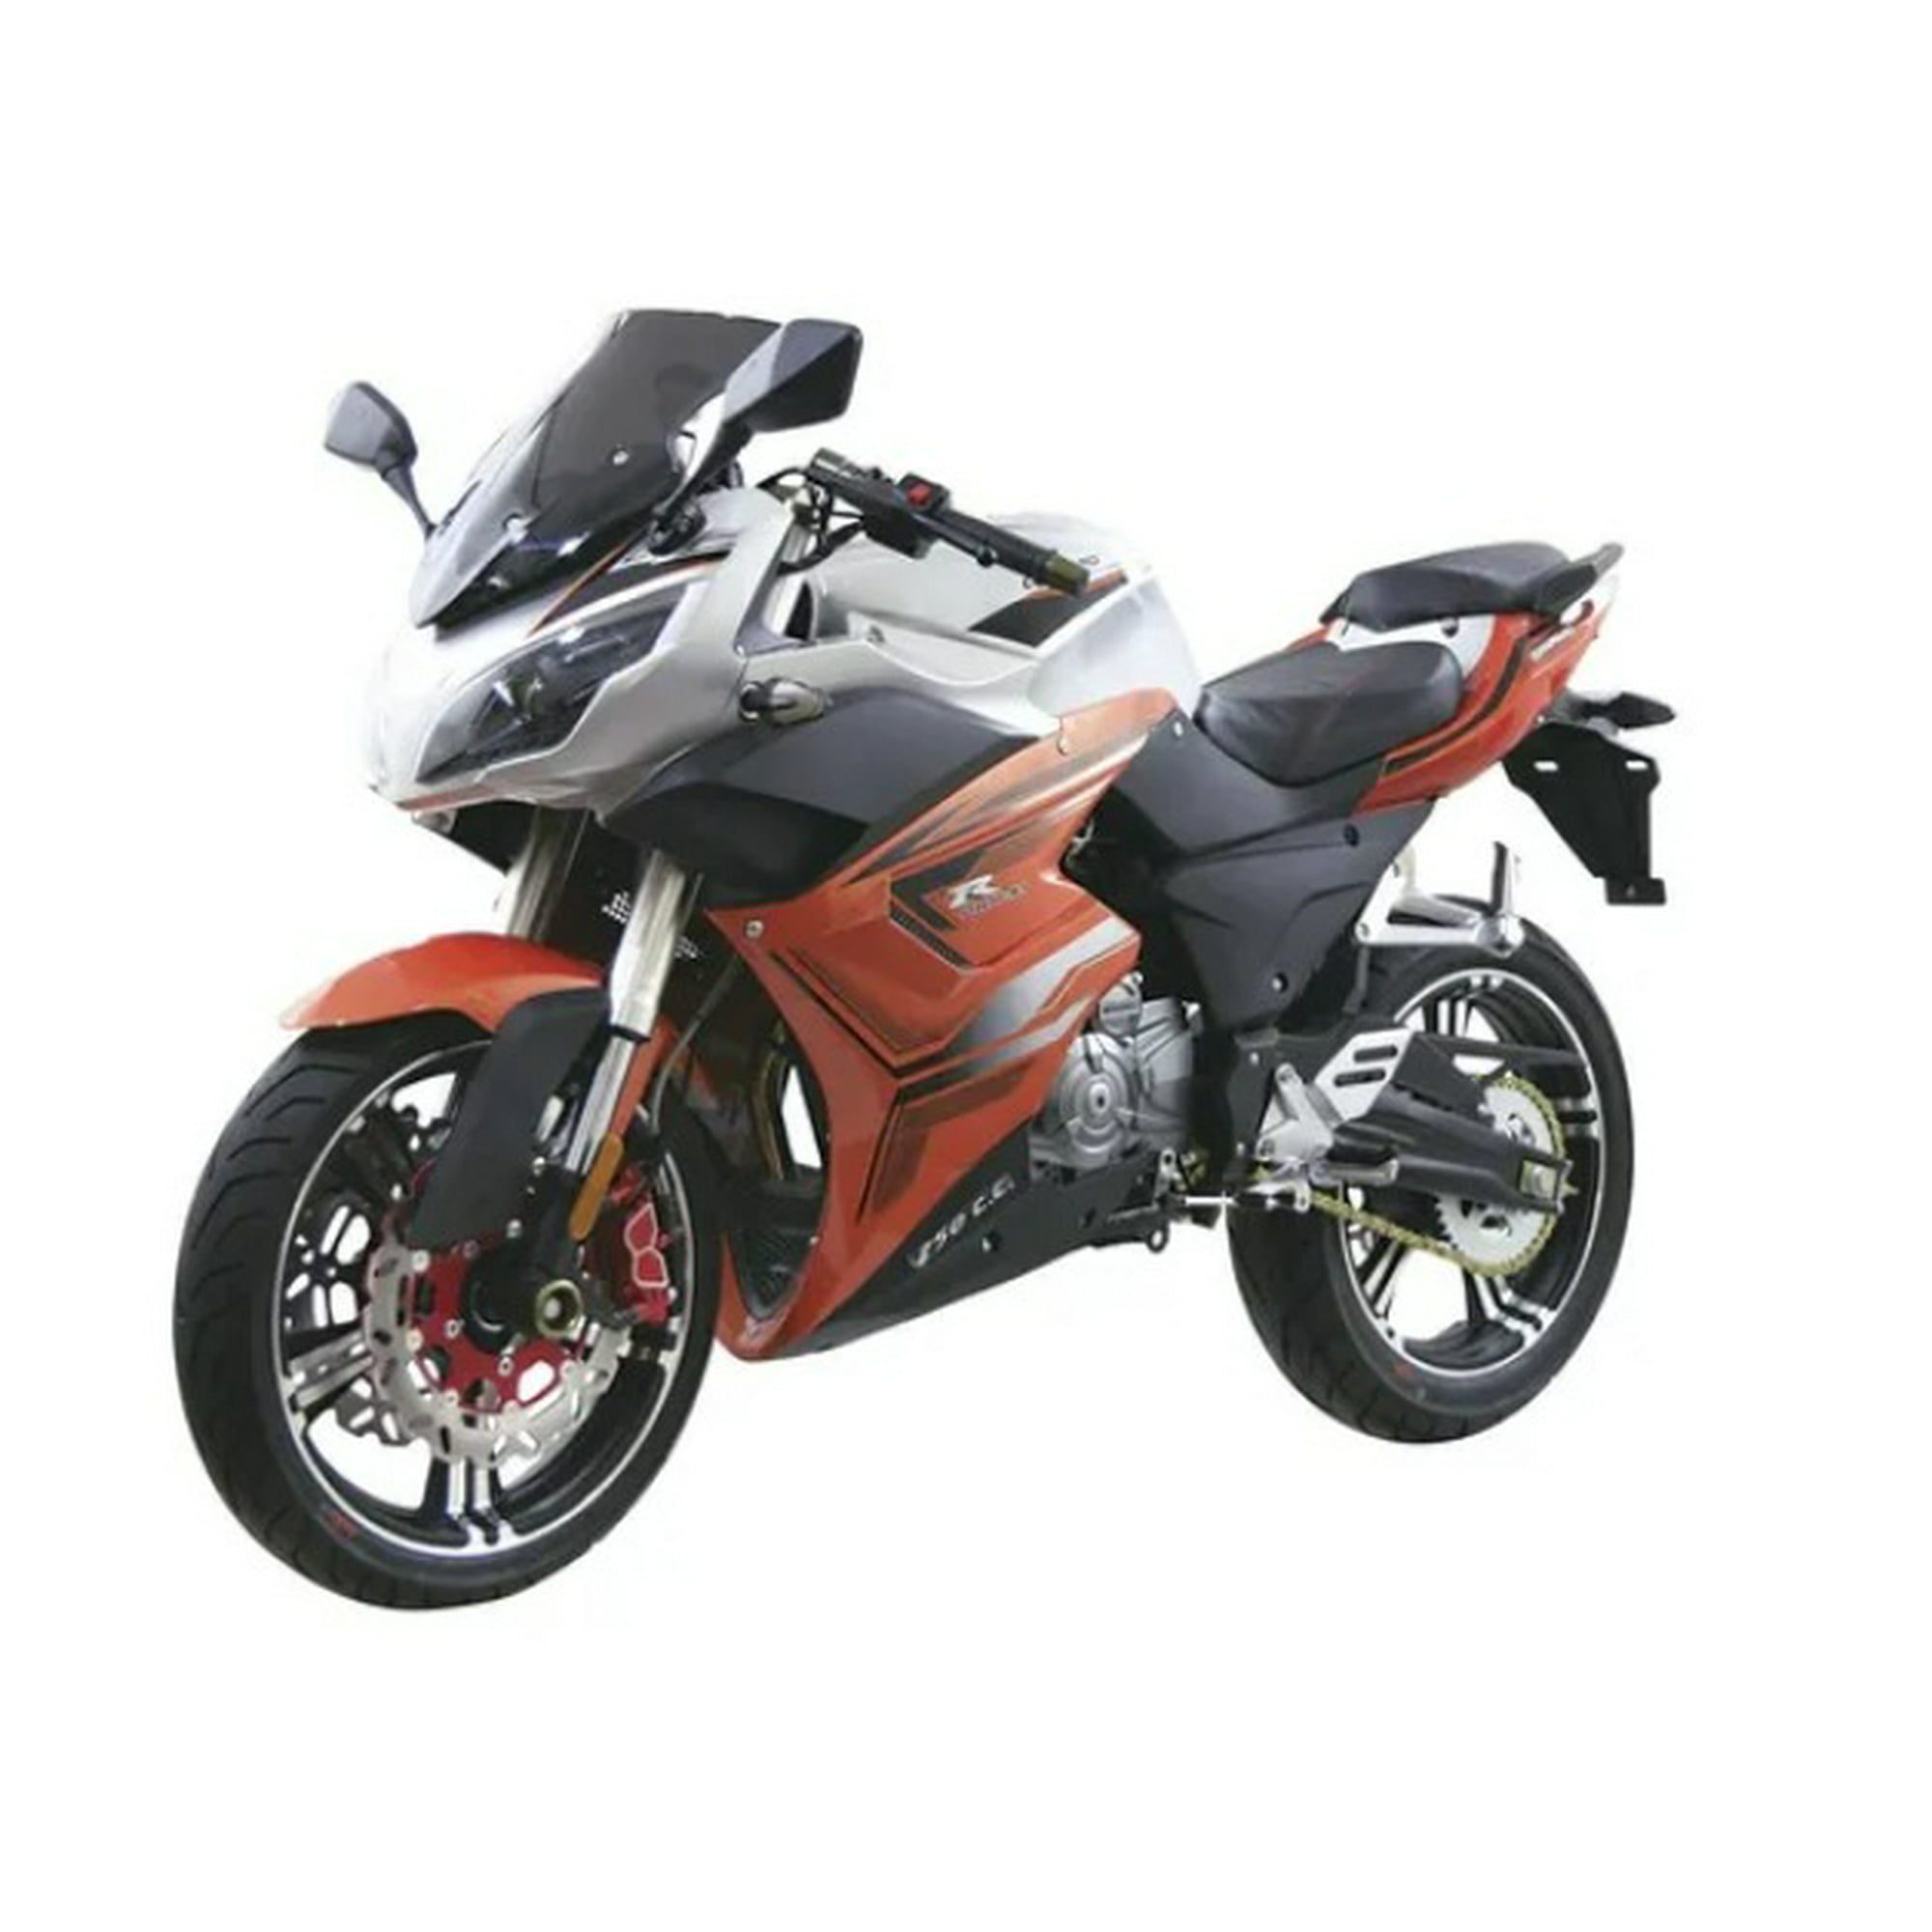 Motocicleta dinamo sport r1